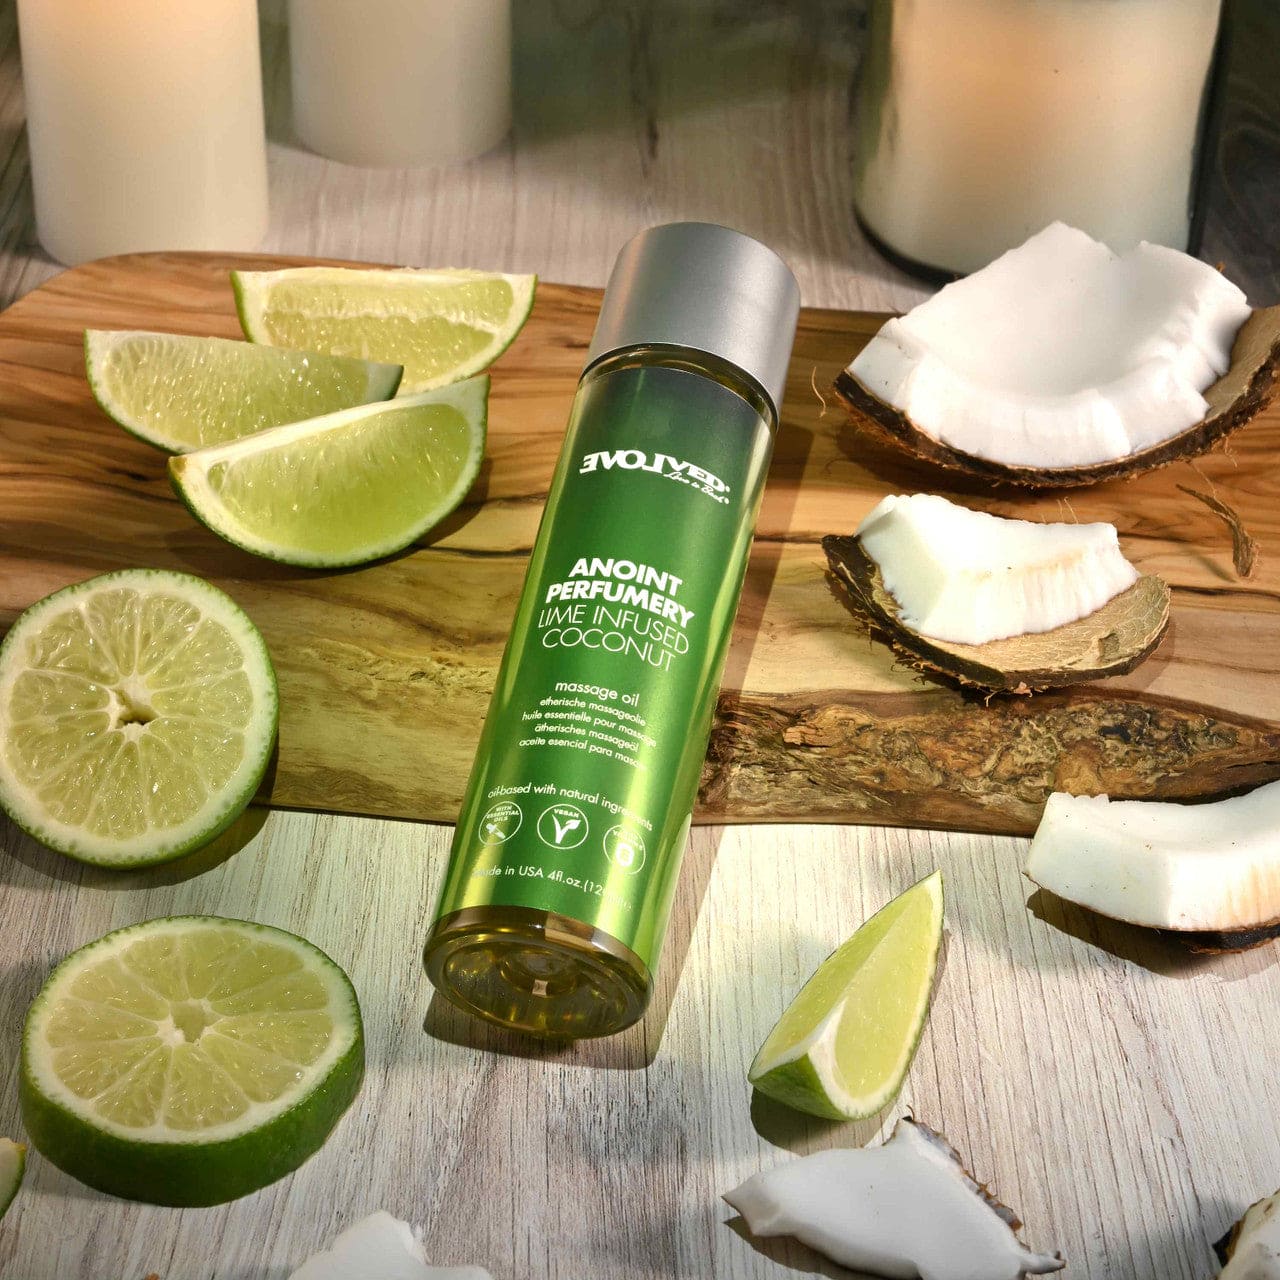 Evolved Novelties Anoint Perfumery Lime Infused Coconut Massage Oil - Rolik®